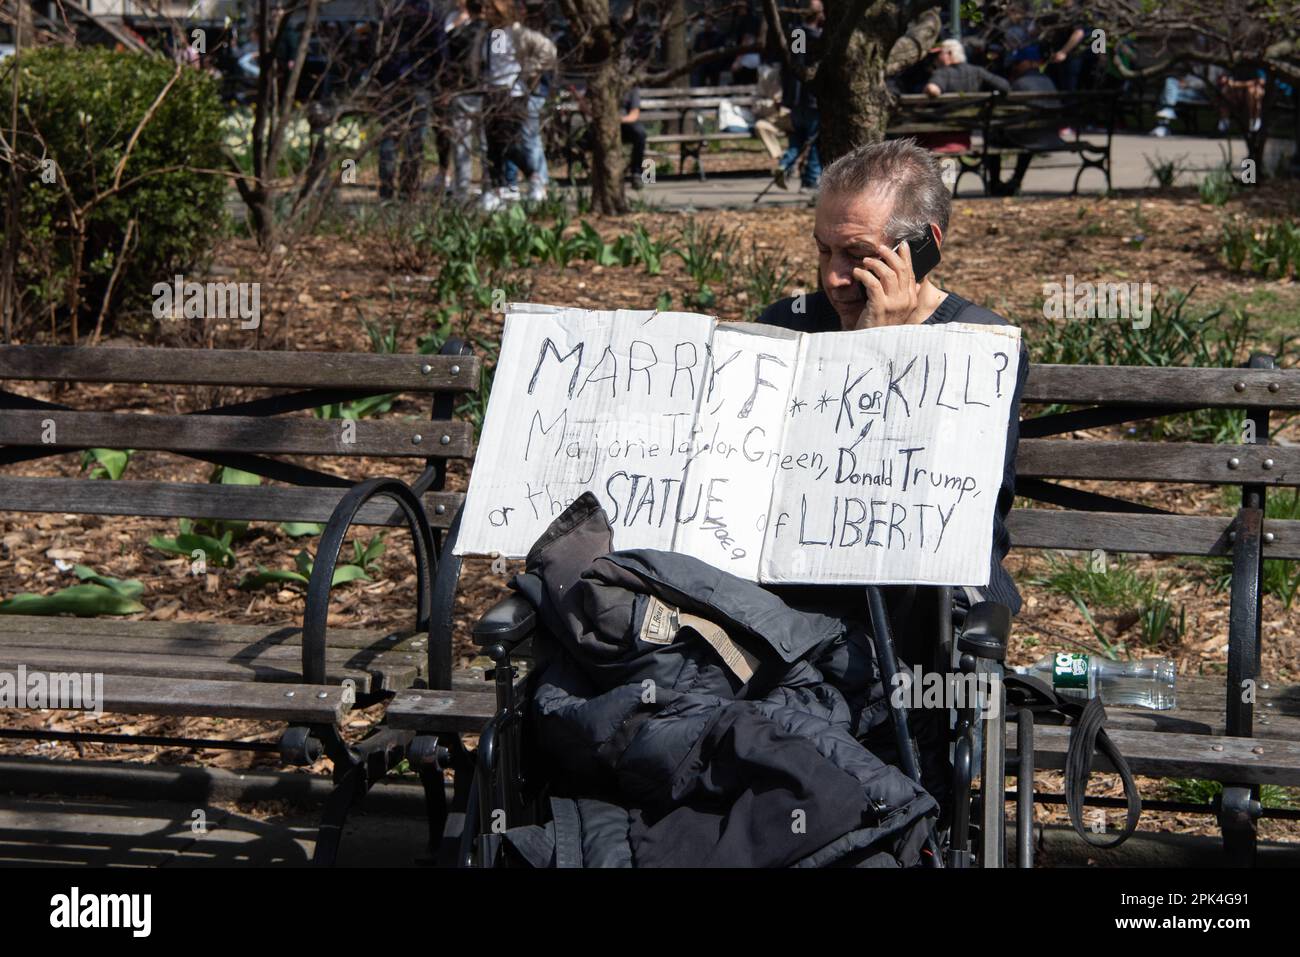 Un uomo si siede su una panchina al di fuori dell'arraignment dell'ex presidente Donald Trump tenendo un segno chiedendo 'sposare, F**k o uccidere? Marjorie Taylor Green, Donald Trump o la Statua della libertà" Foto Stock